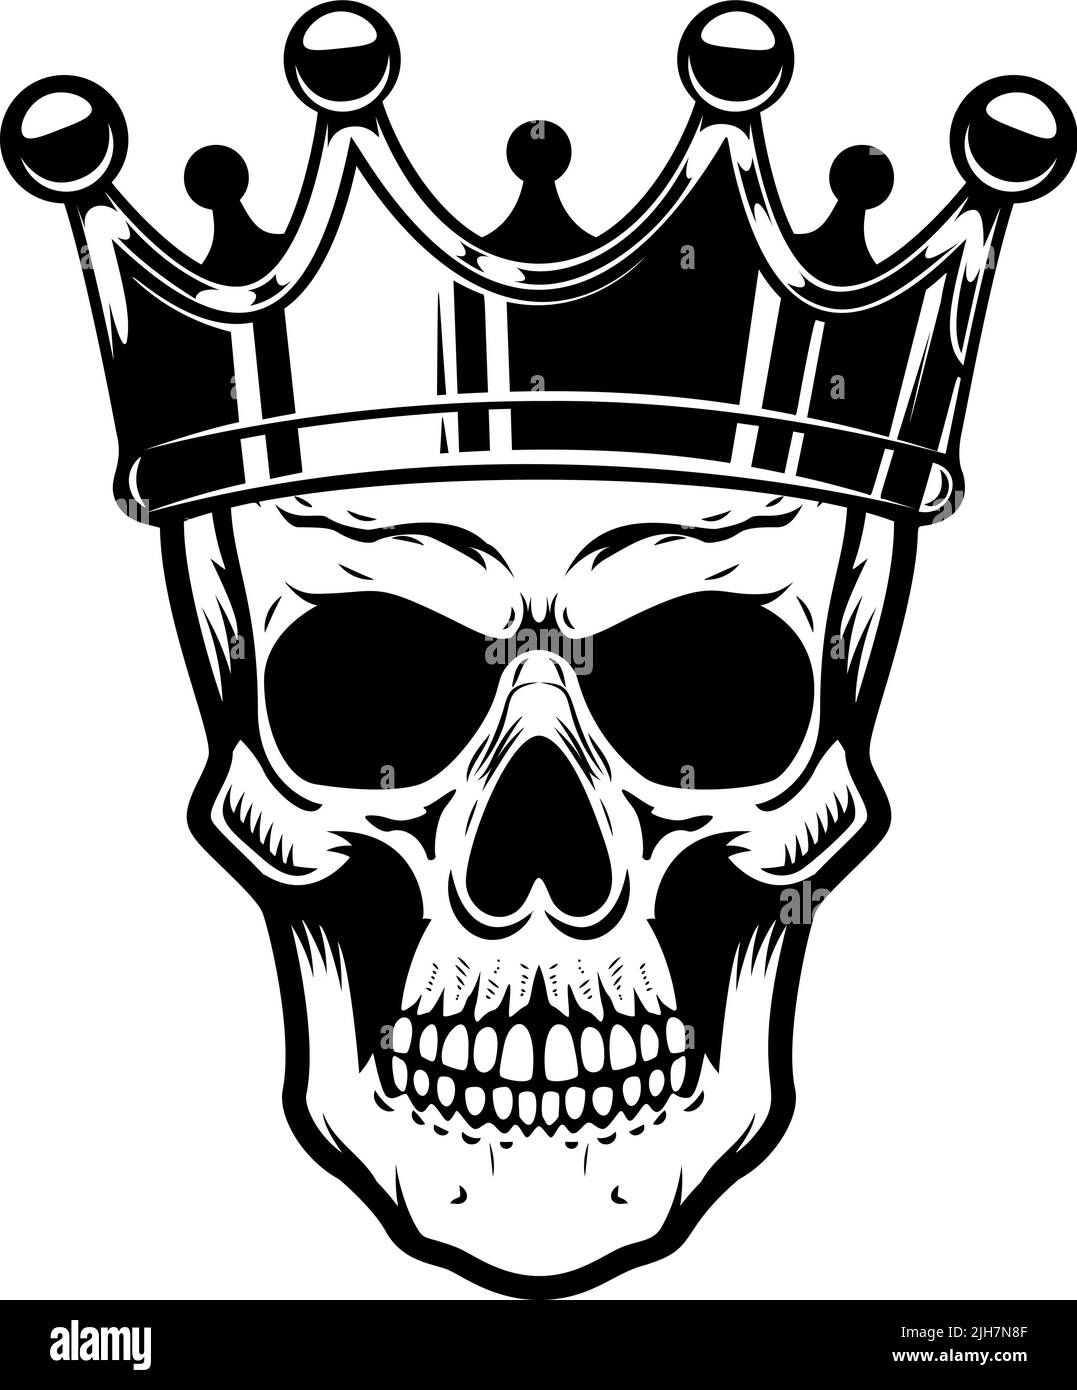 Skull with king crown. Design element for logo, label, sign, emblem. Vector illustration Stock Vector